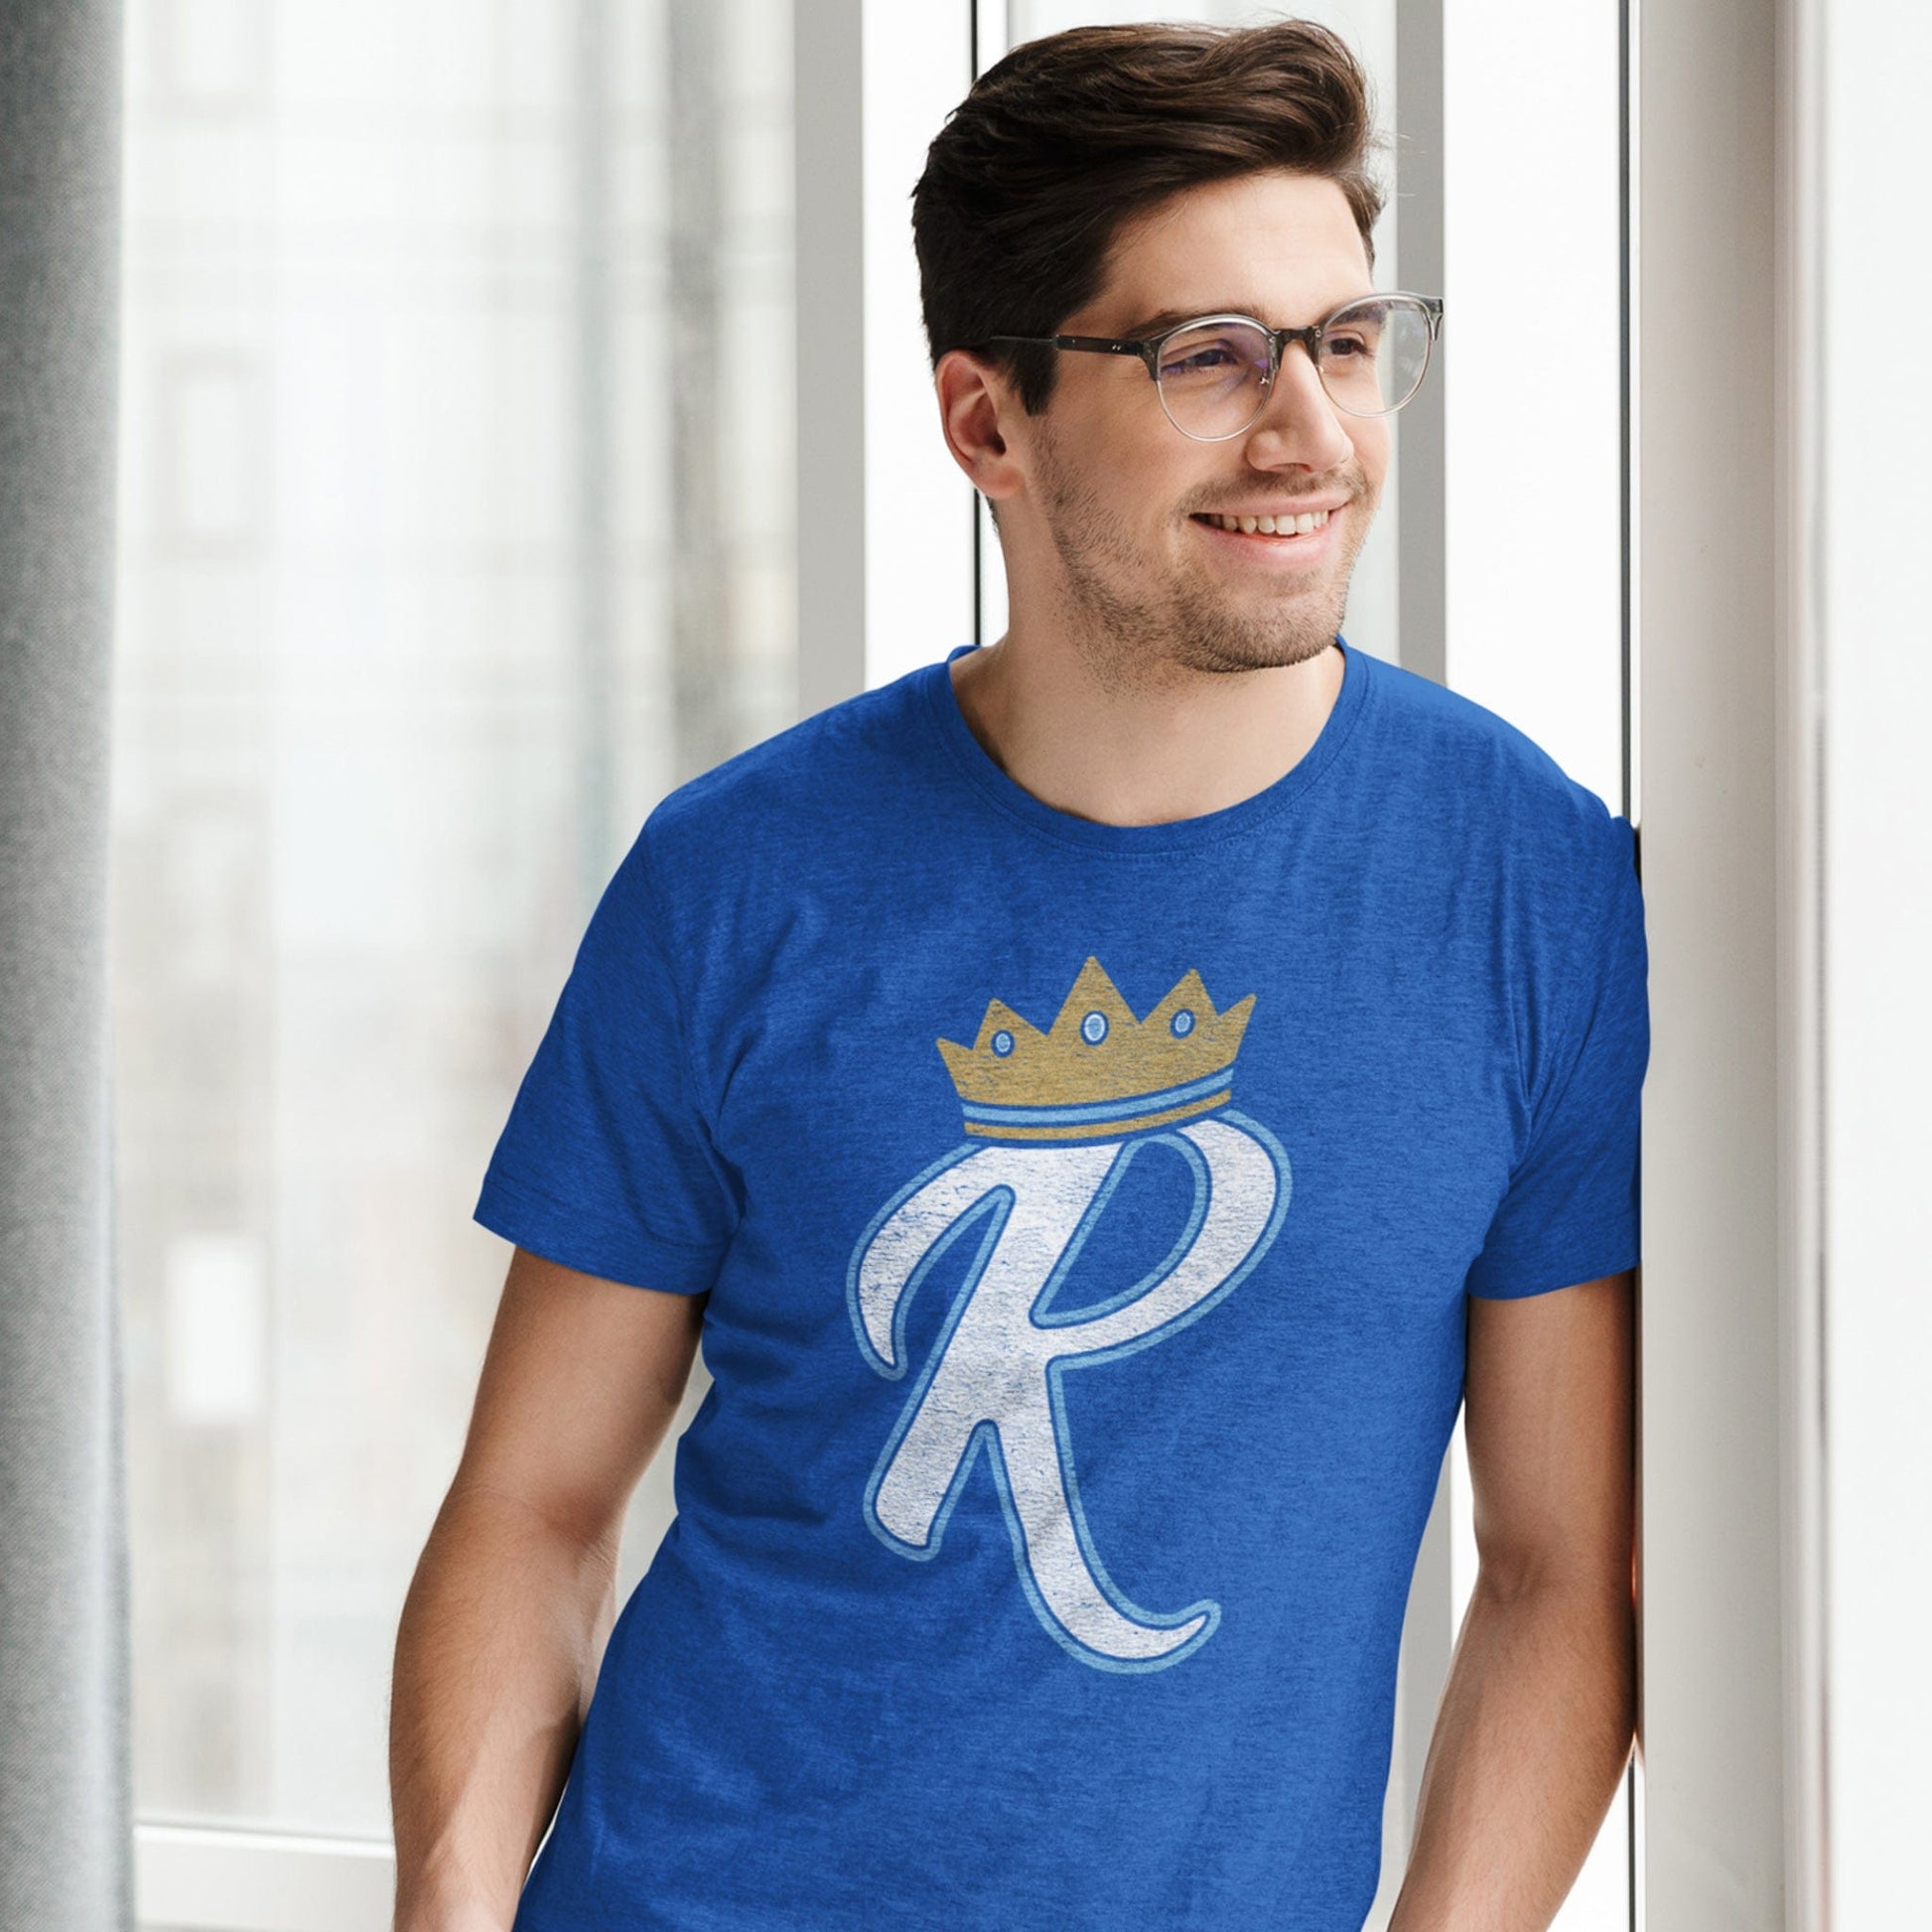 Kansas City Royals Apparel, Royals Jersey, Royals Clothing and